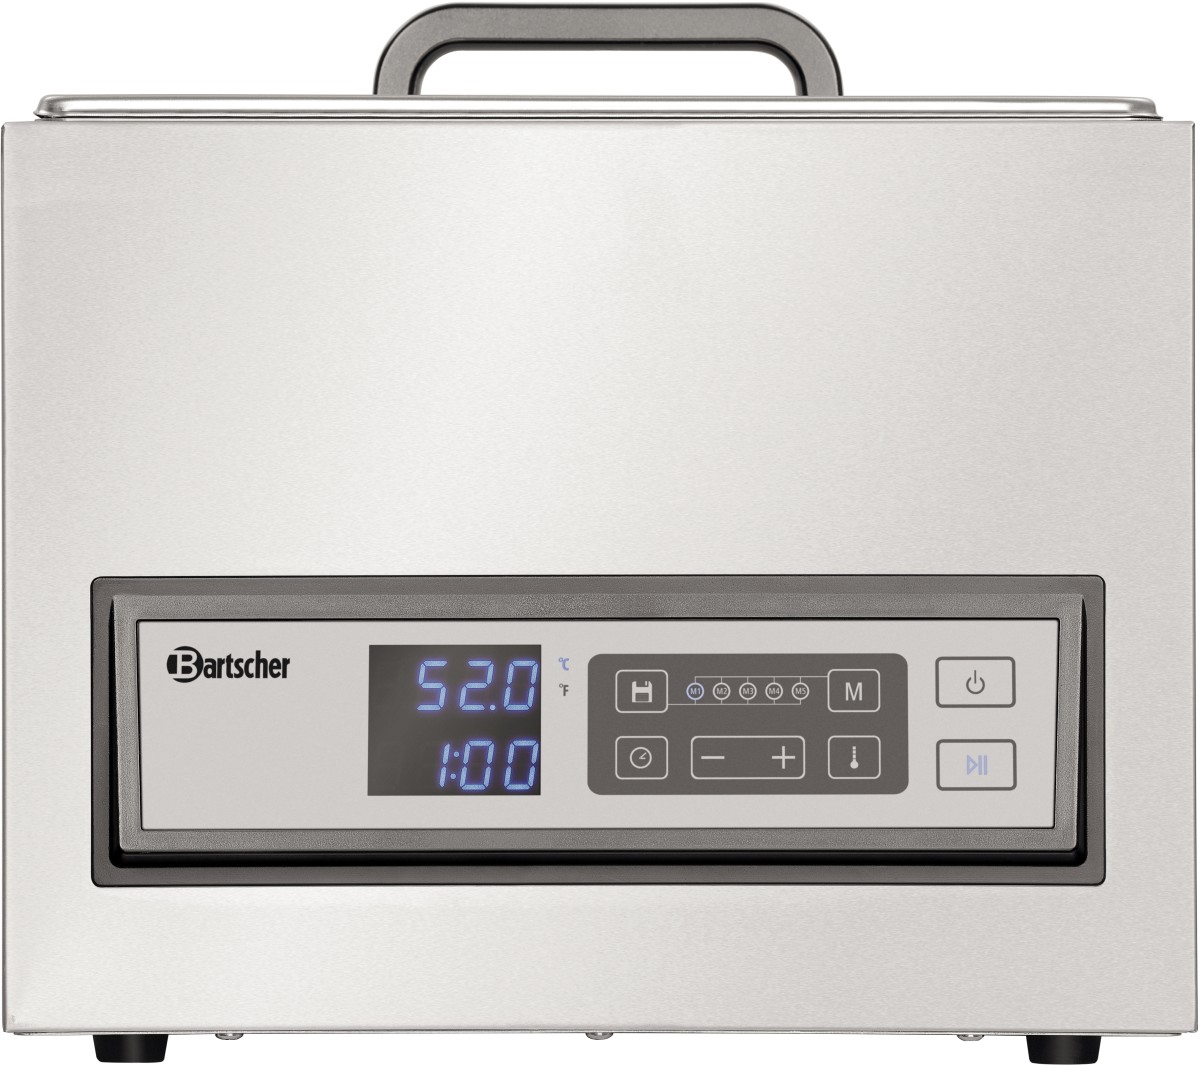  Bartscher Sous-Vide cooker SV G16 